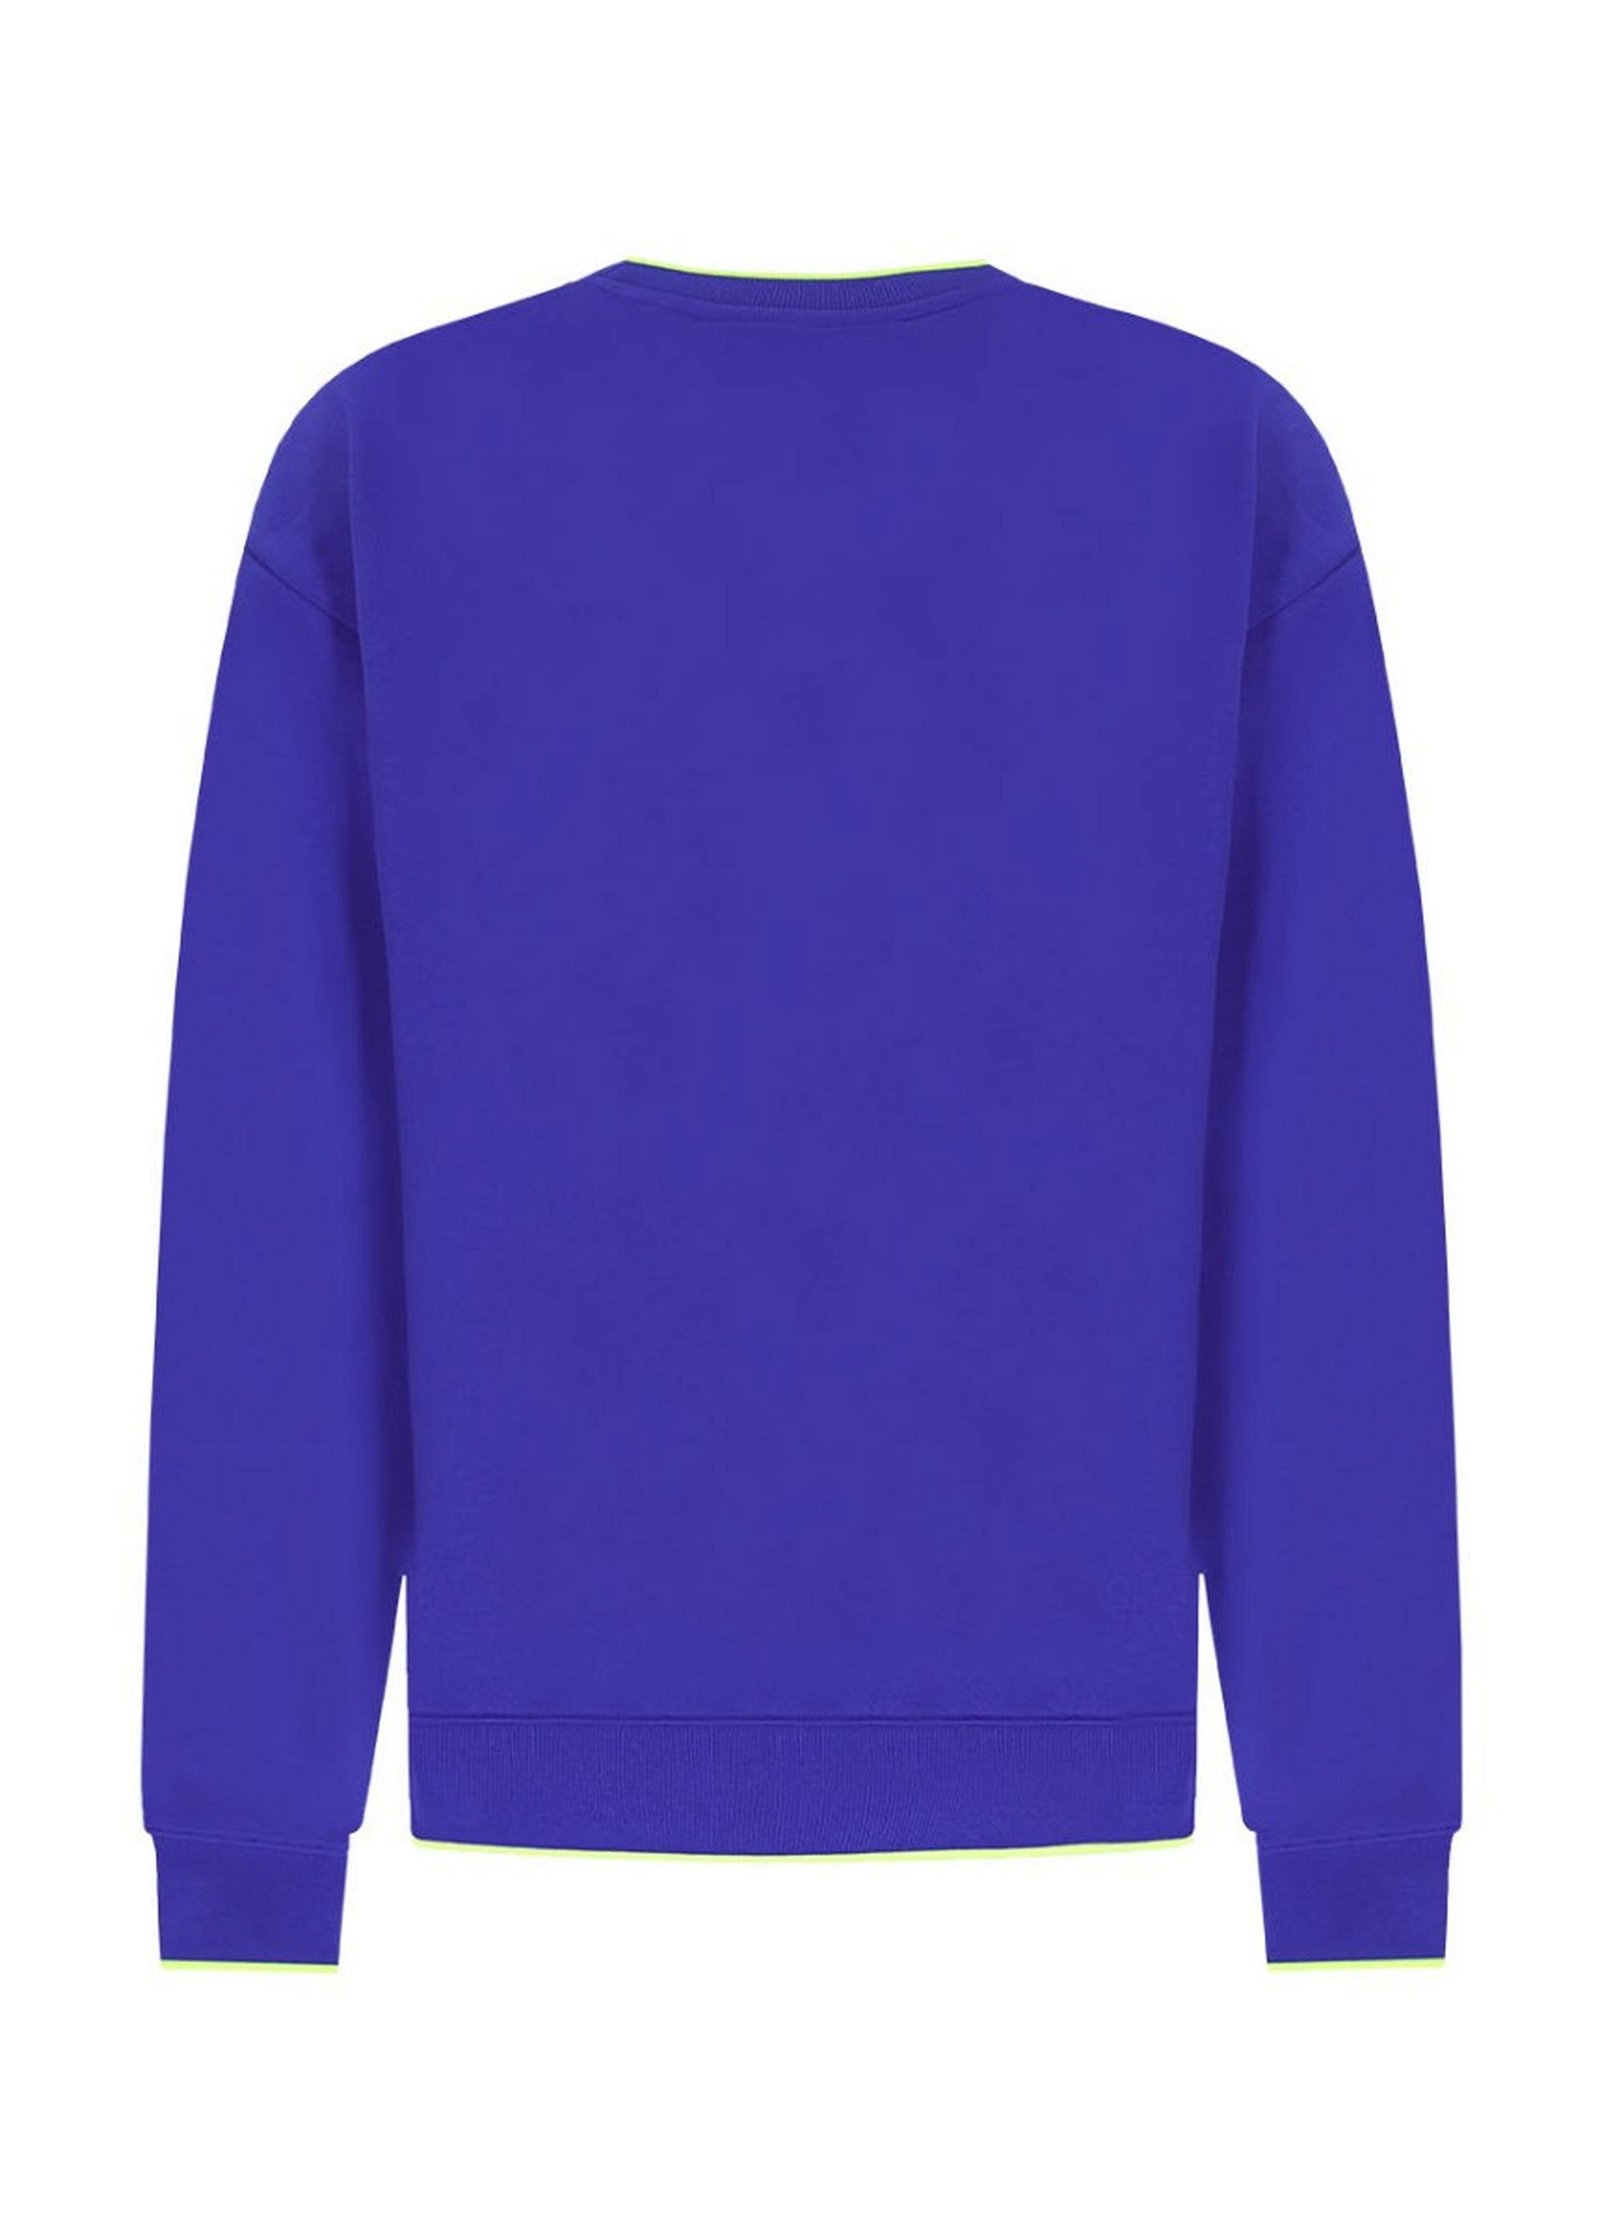 Erkek Sweatshirt 23014 954 - Racing blue